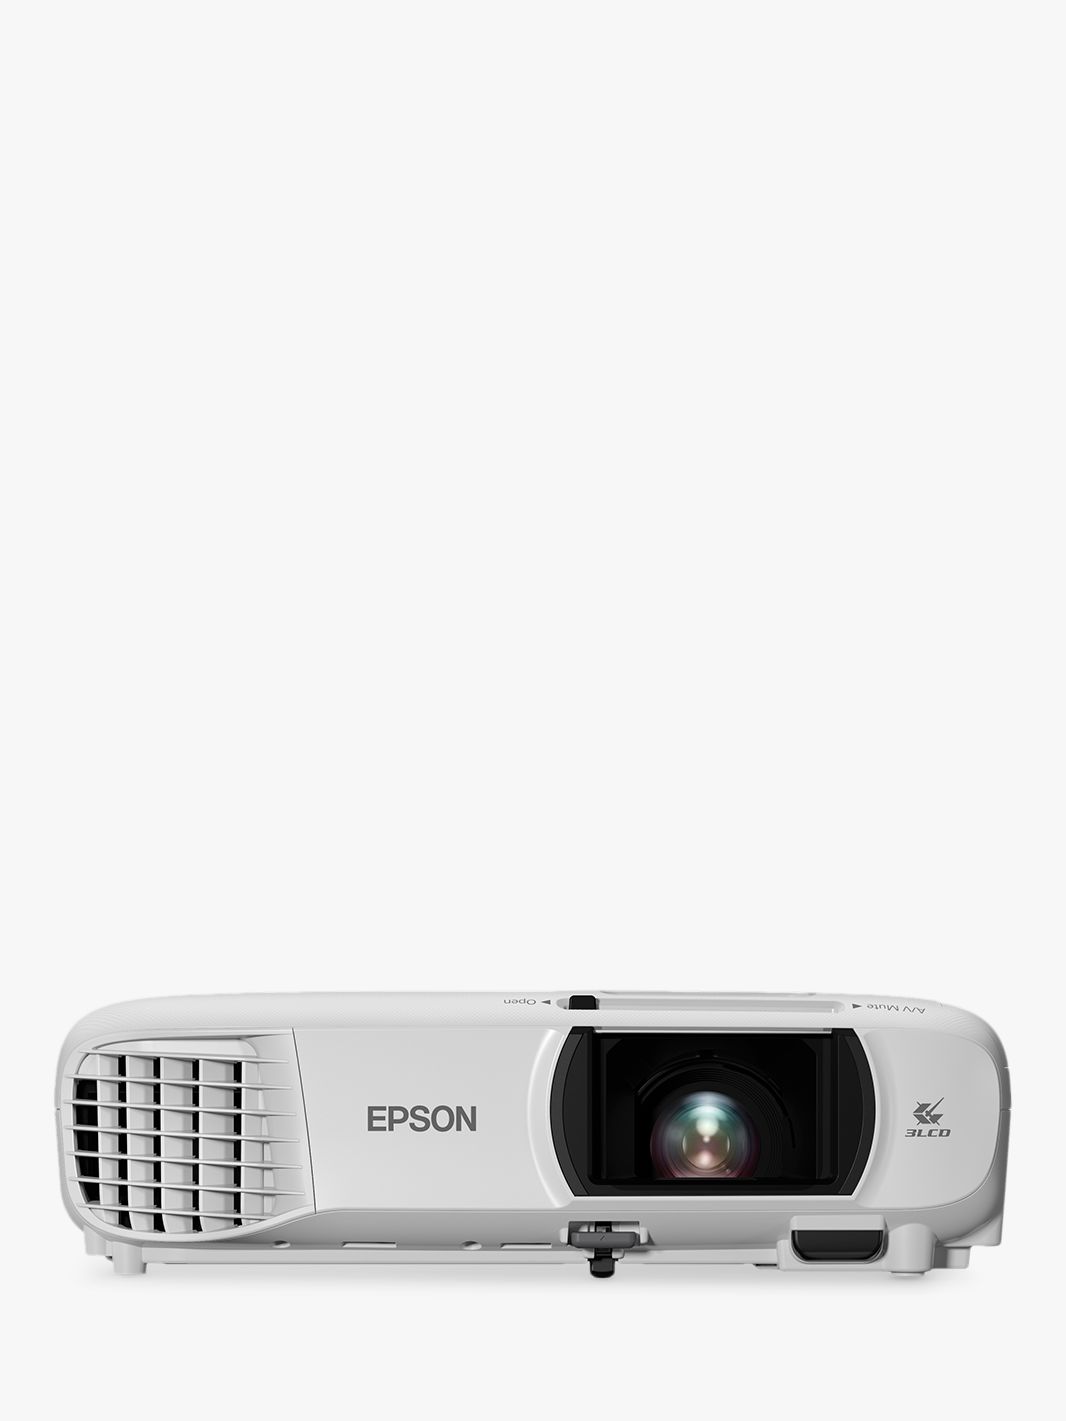 Epson 650. Проектор Epson tw650. Проектор Epson eh-tw650. Eh-tw650.